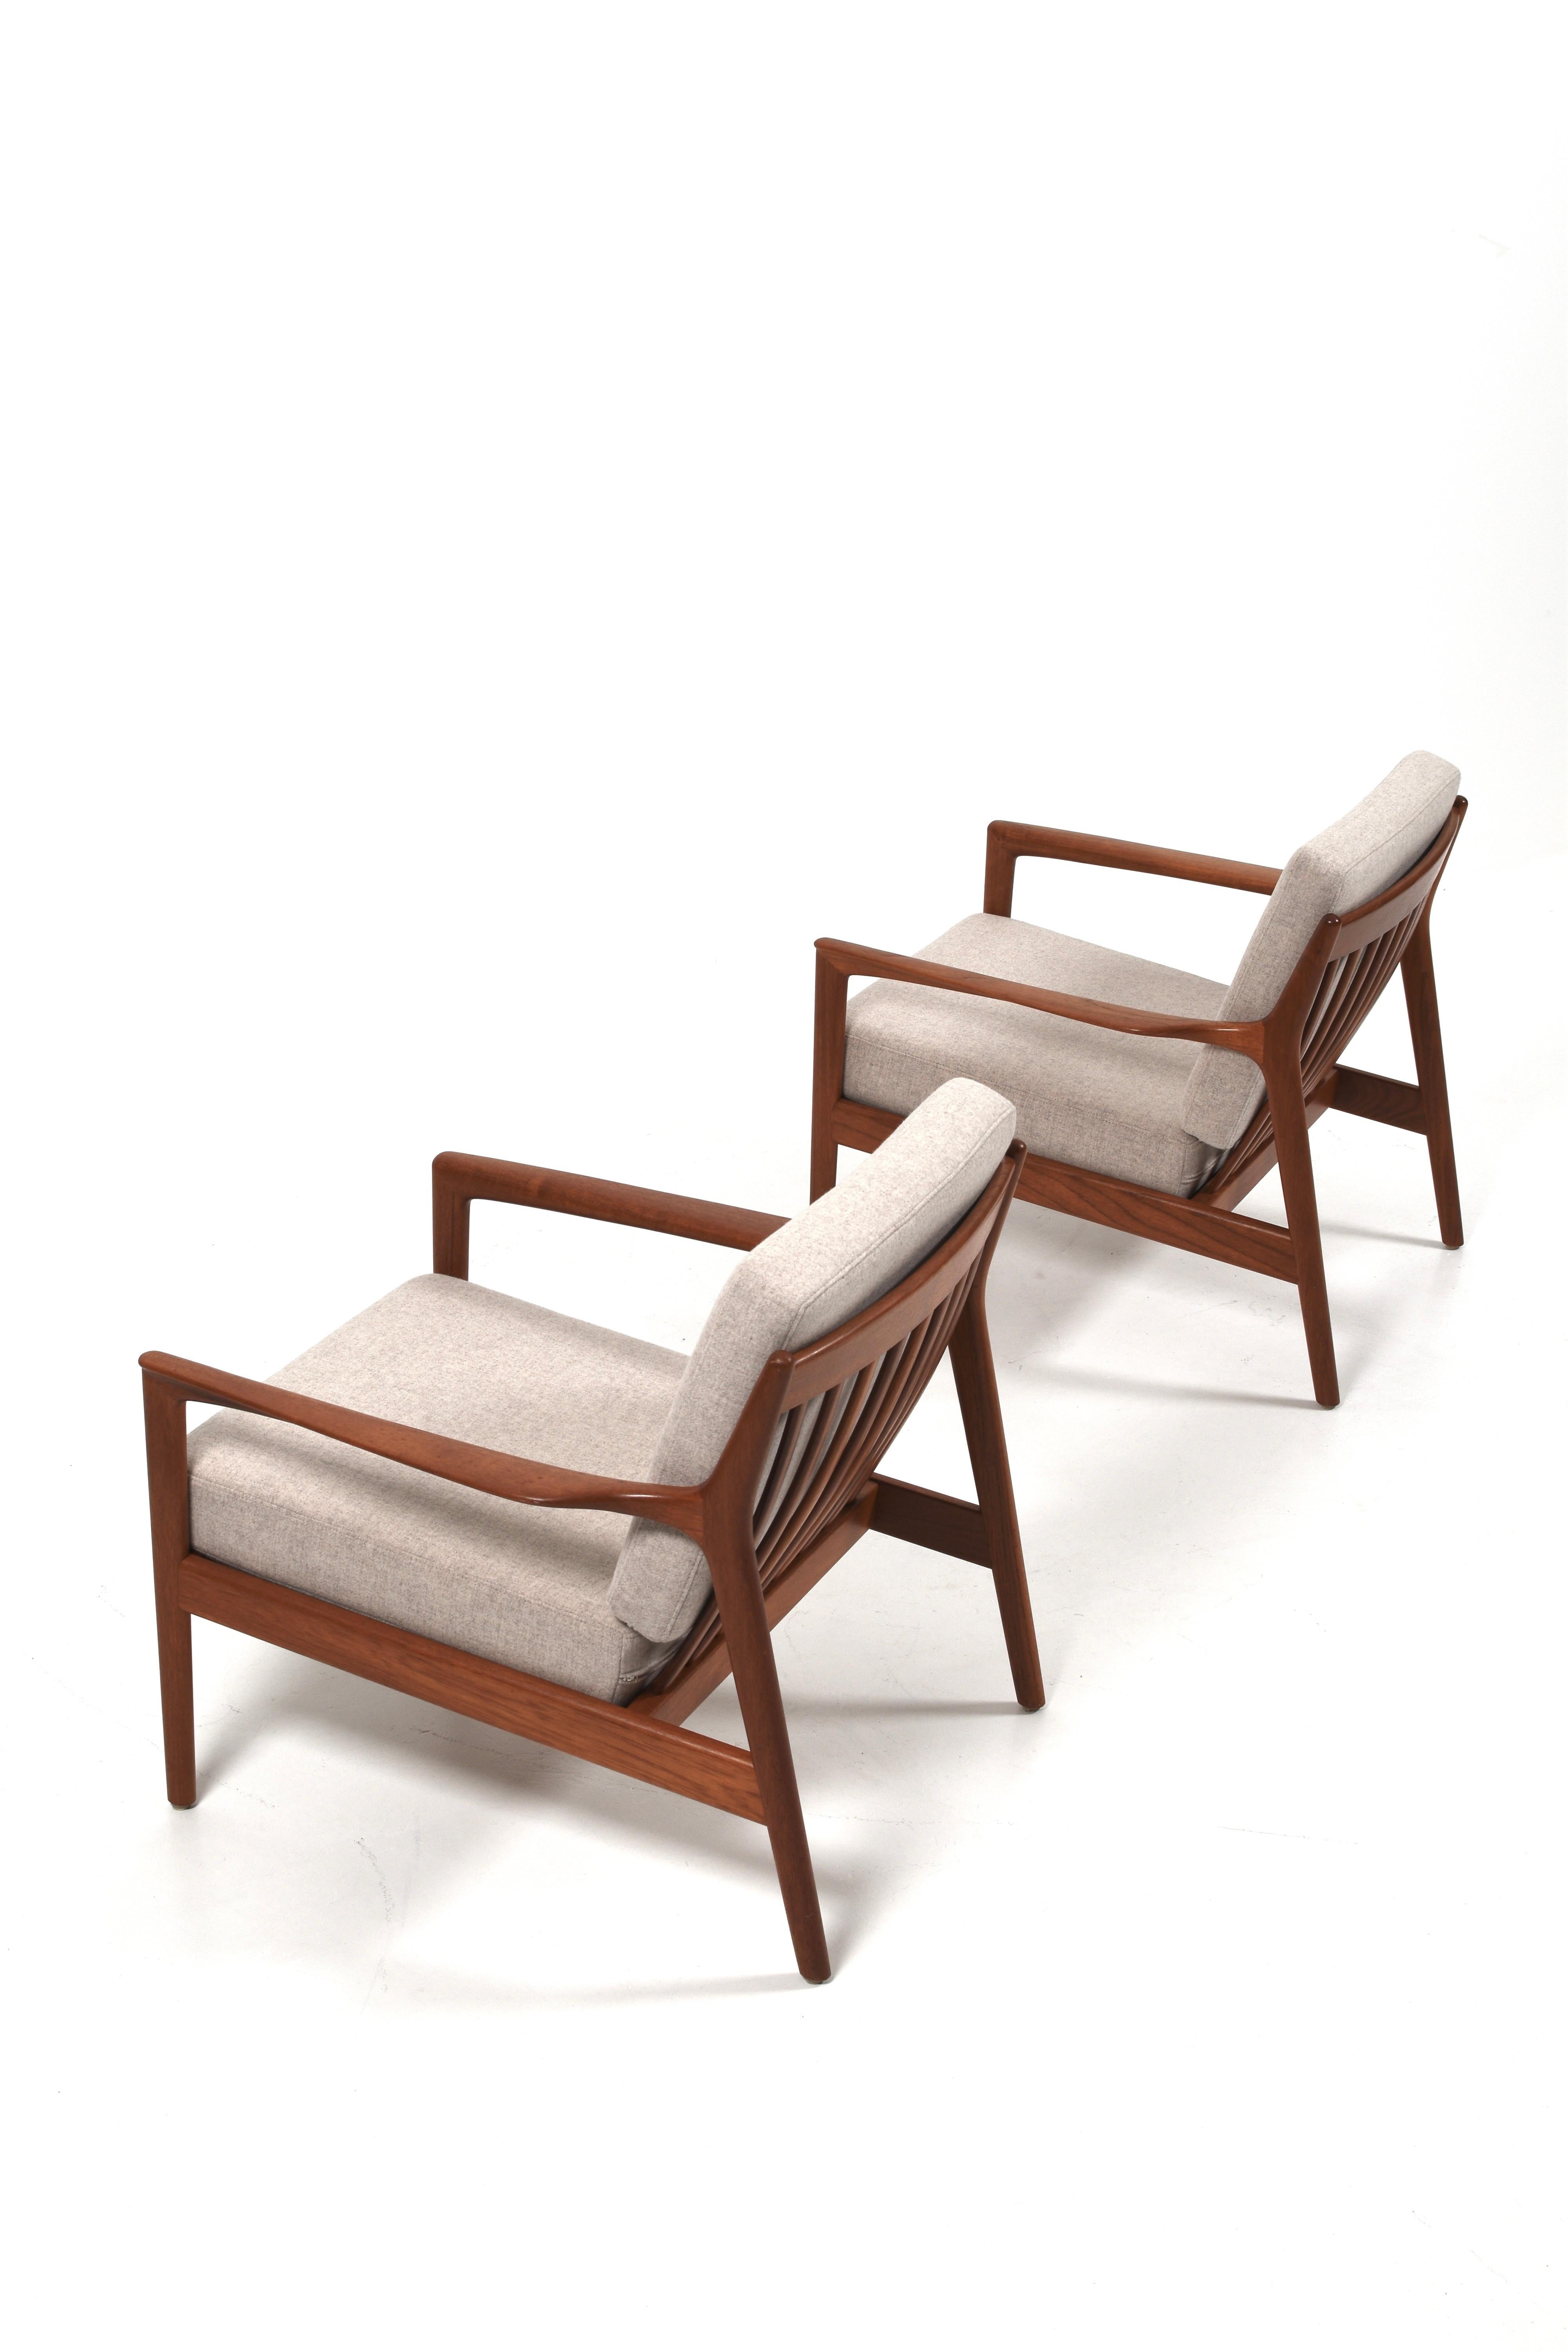 L'un des fauteuils vintage les plus recherchés ! Le modèle s'appelle USA75 et a été conçu par Folke Calle pour DUX.

Les fauteuils datent des années 60, ils ont un design élégant et stylé qui s'accorde parfaitement avec d'autres styles.

Les